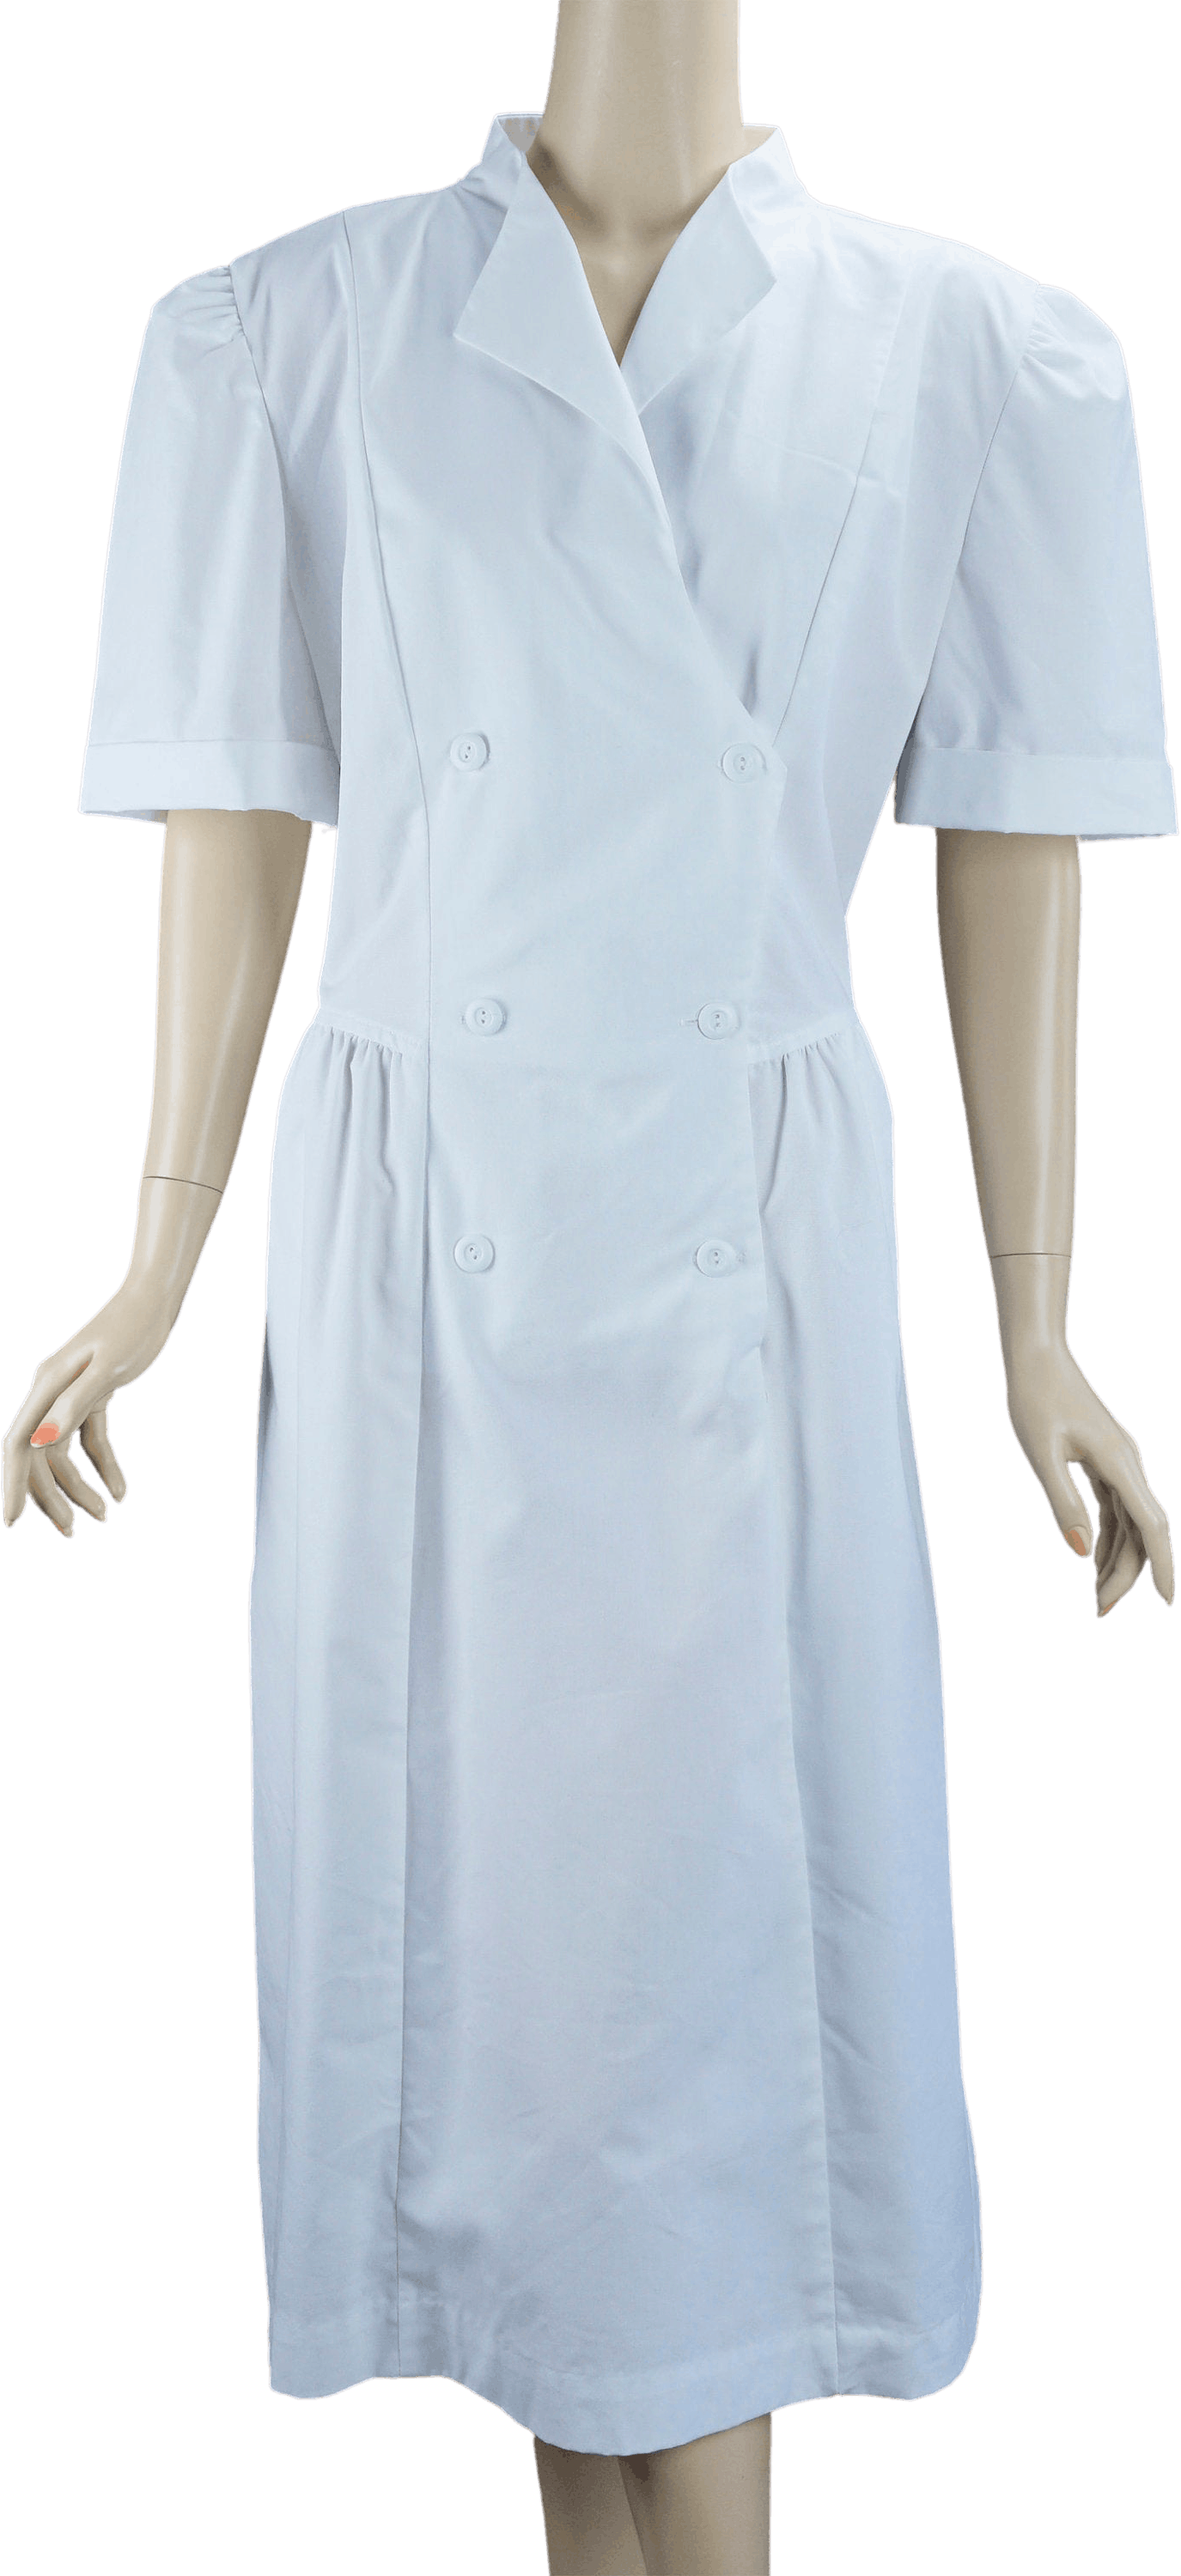 Vintage 80’s White Nurse / Waitress Uniform Dress by Crest | Shop THRILLING